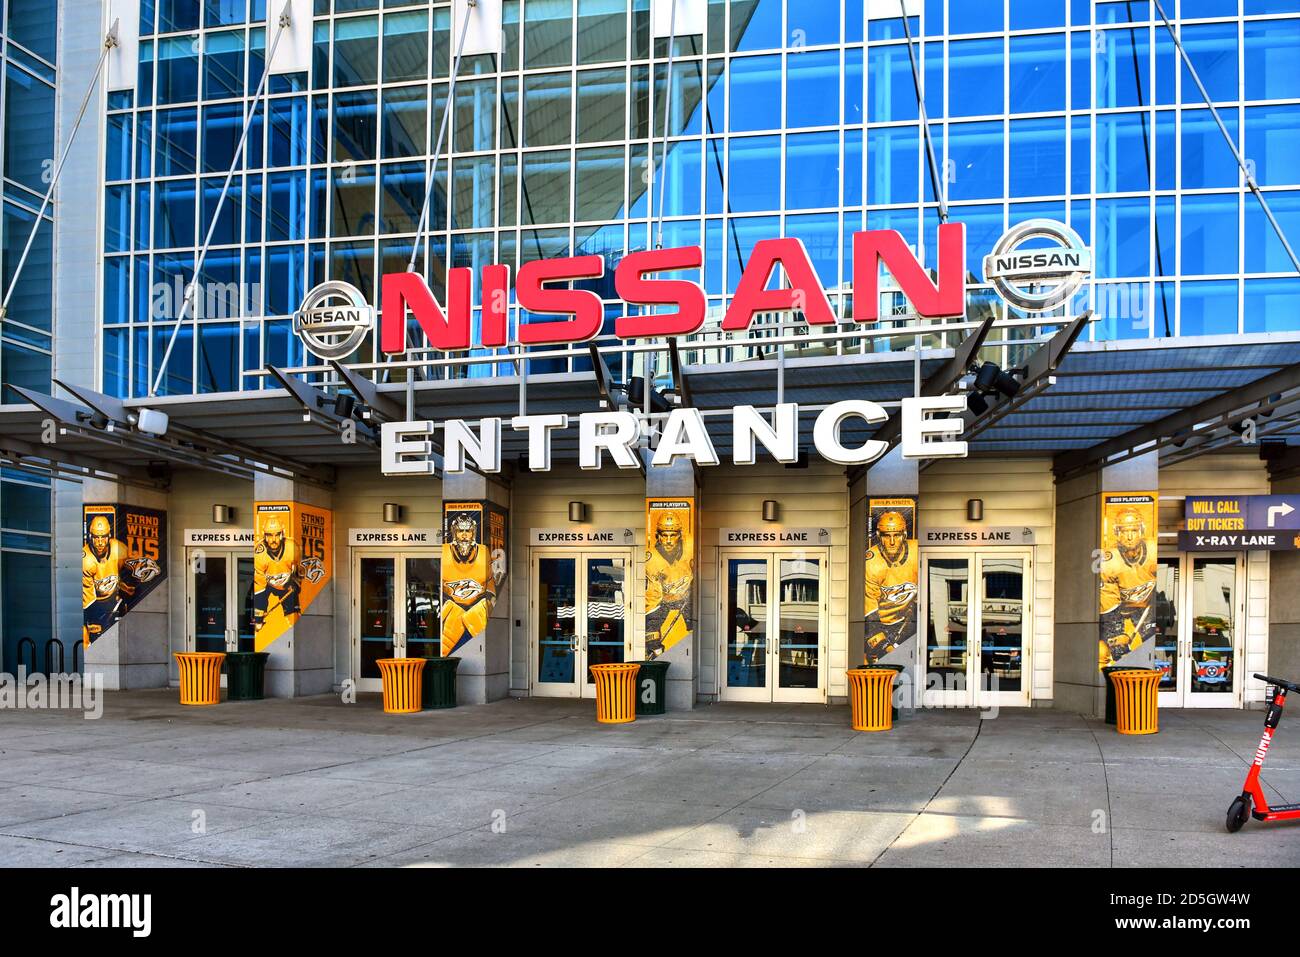 Nashville, TN, USA - Septiembre 21, 2019: El Bridgestone Arena ha sido el hogar de los Nashville Predators de la NHL desde 1998. Está ubicado en Broadw Foto de stock